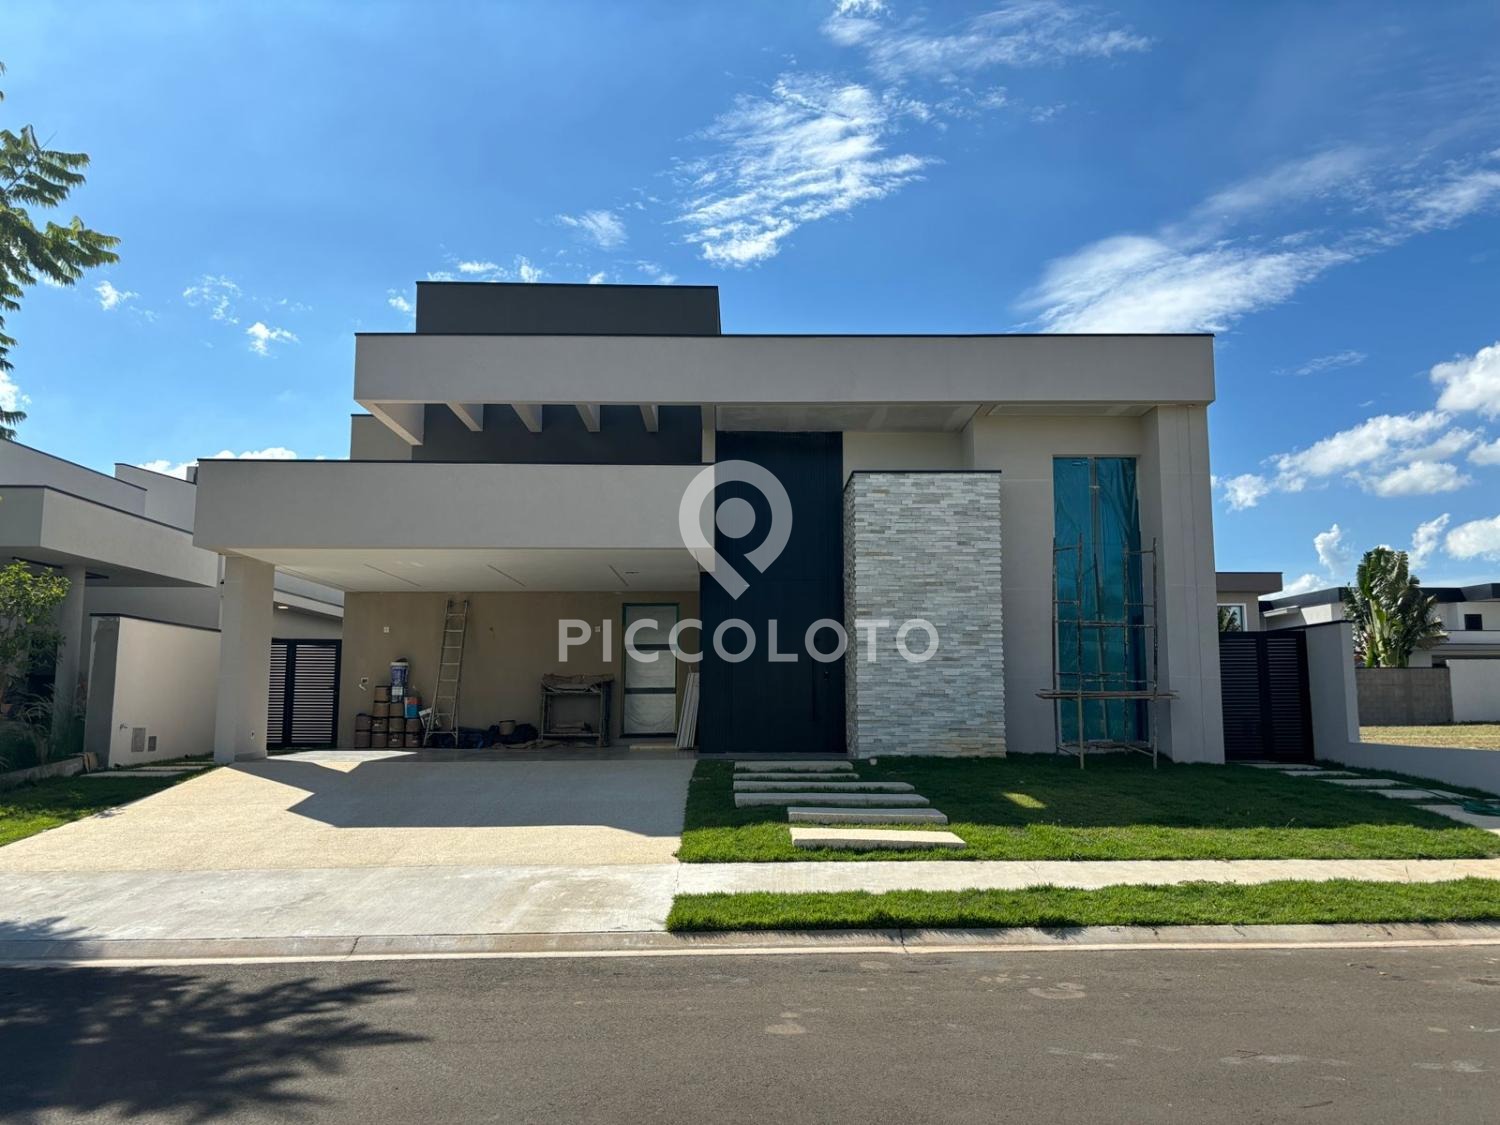 Piccoloto - Casa à venda no Condomínio Fazenda Duas Marias em Jaguariúna